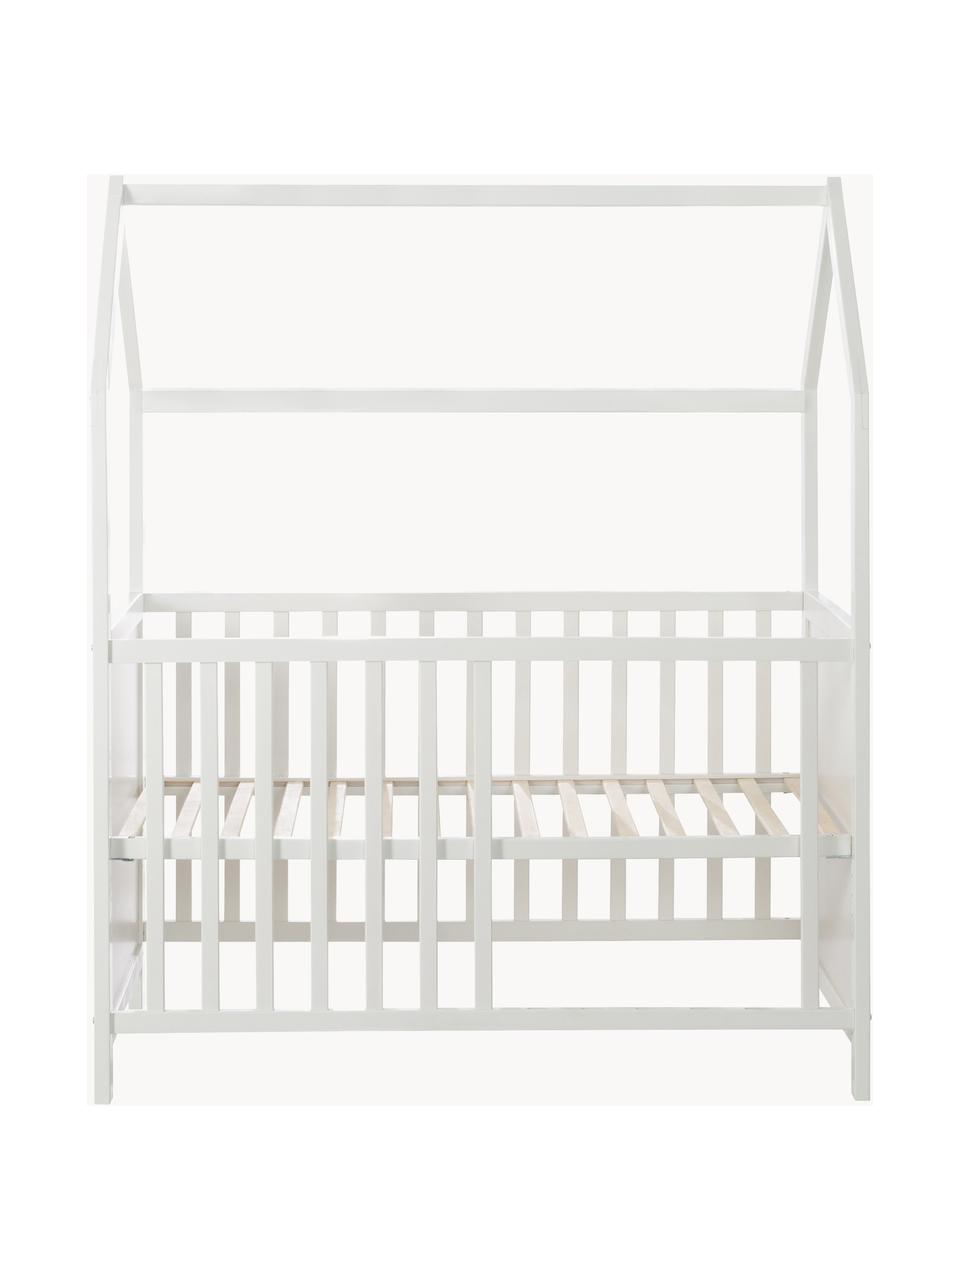 Höhenverstellbares Kinder-Hausbett Style, verschiedene Grössen, Rahmen: Schichtholz, Mitteldichte, Weiss, B 60 x L 120 cm